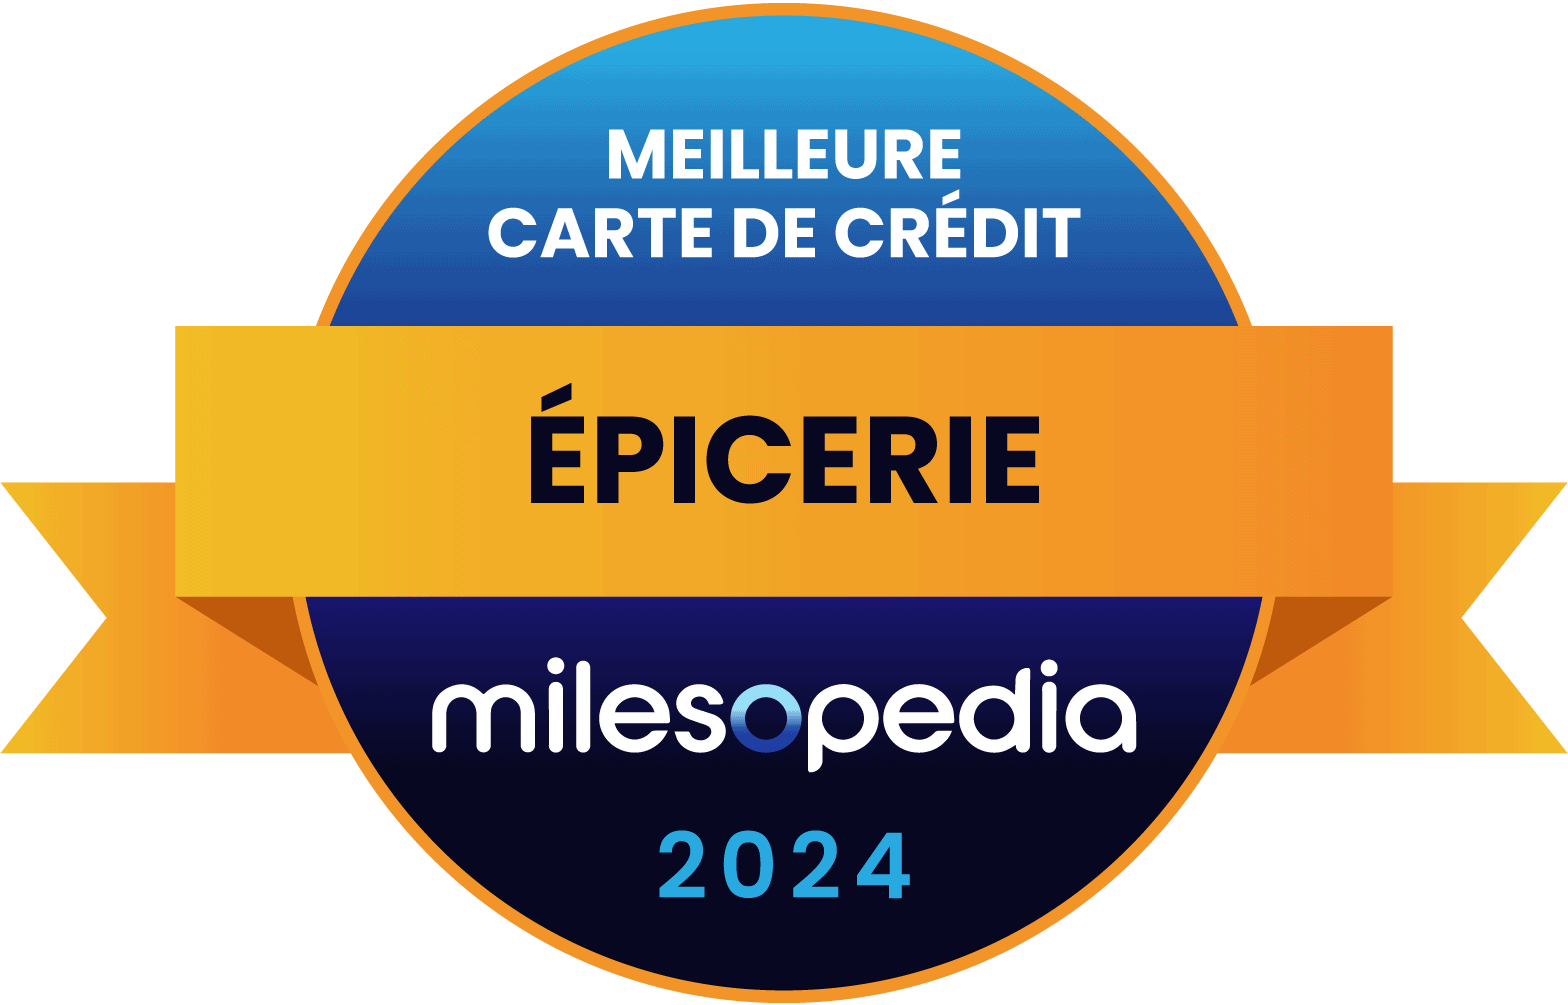 Epicerie MeilleureCarteDeCredit Milesopedia 2024